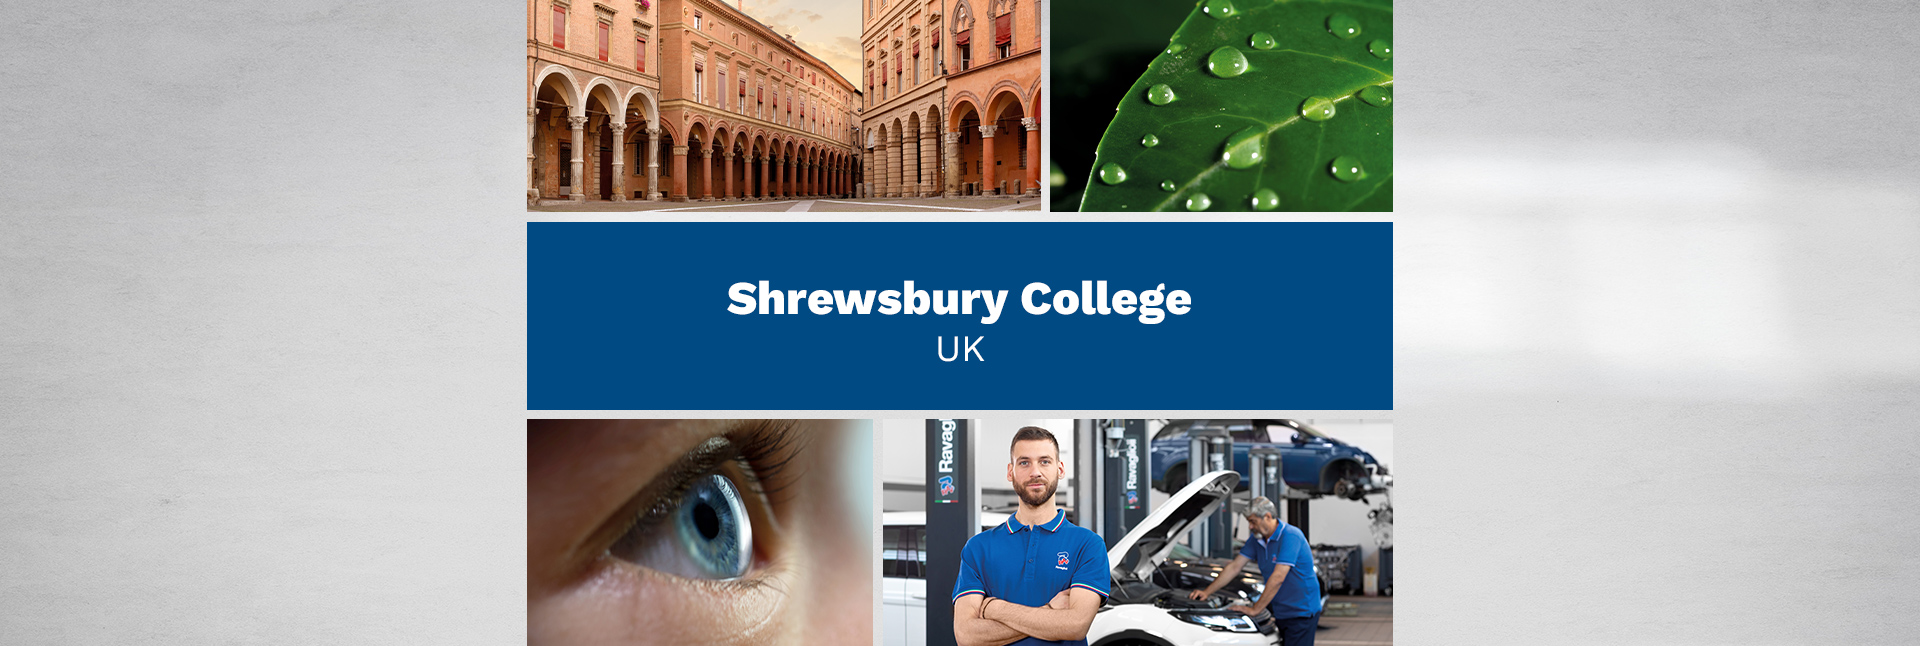 Shrewsbury College – UK